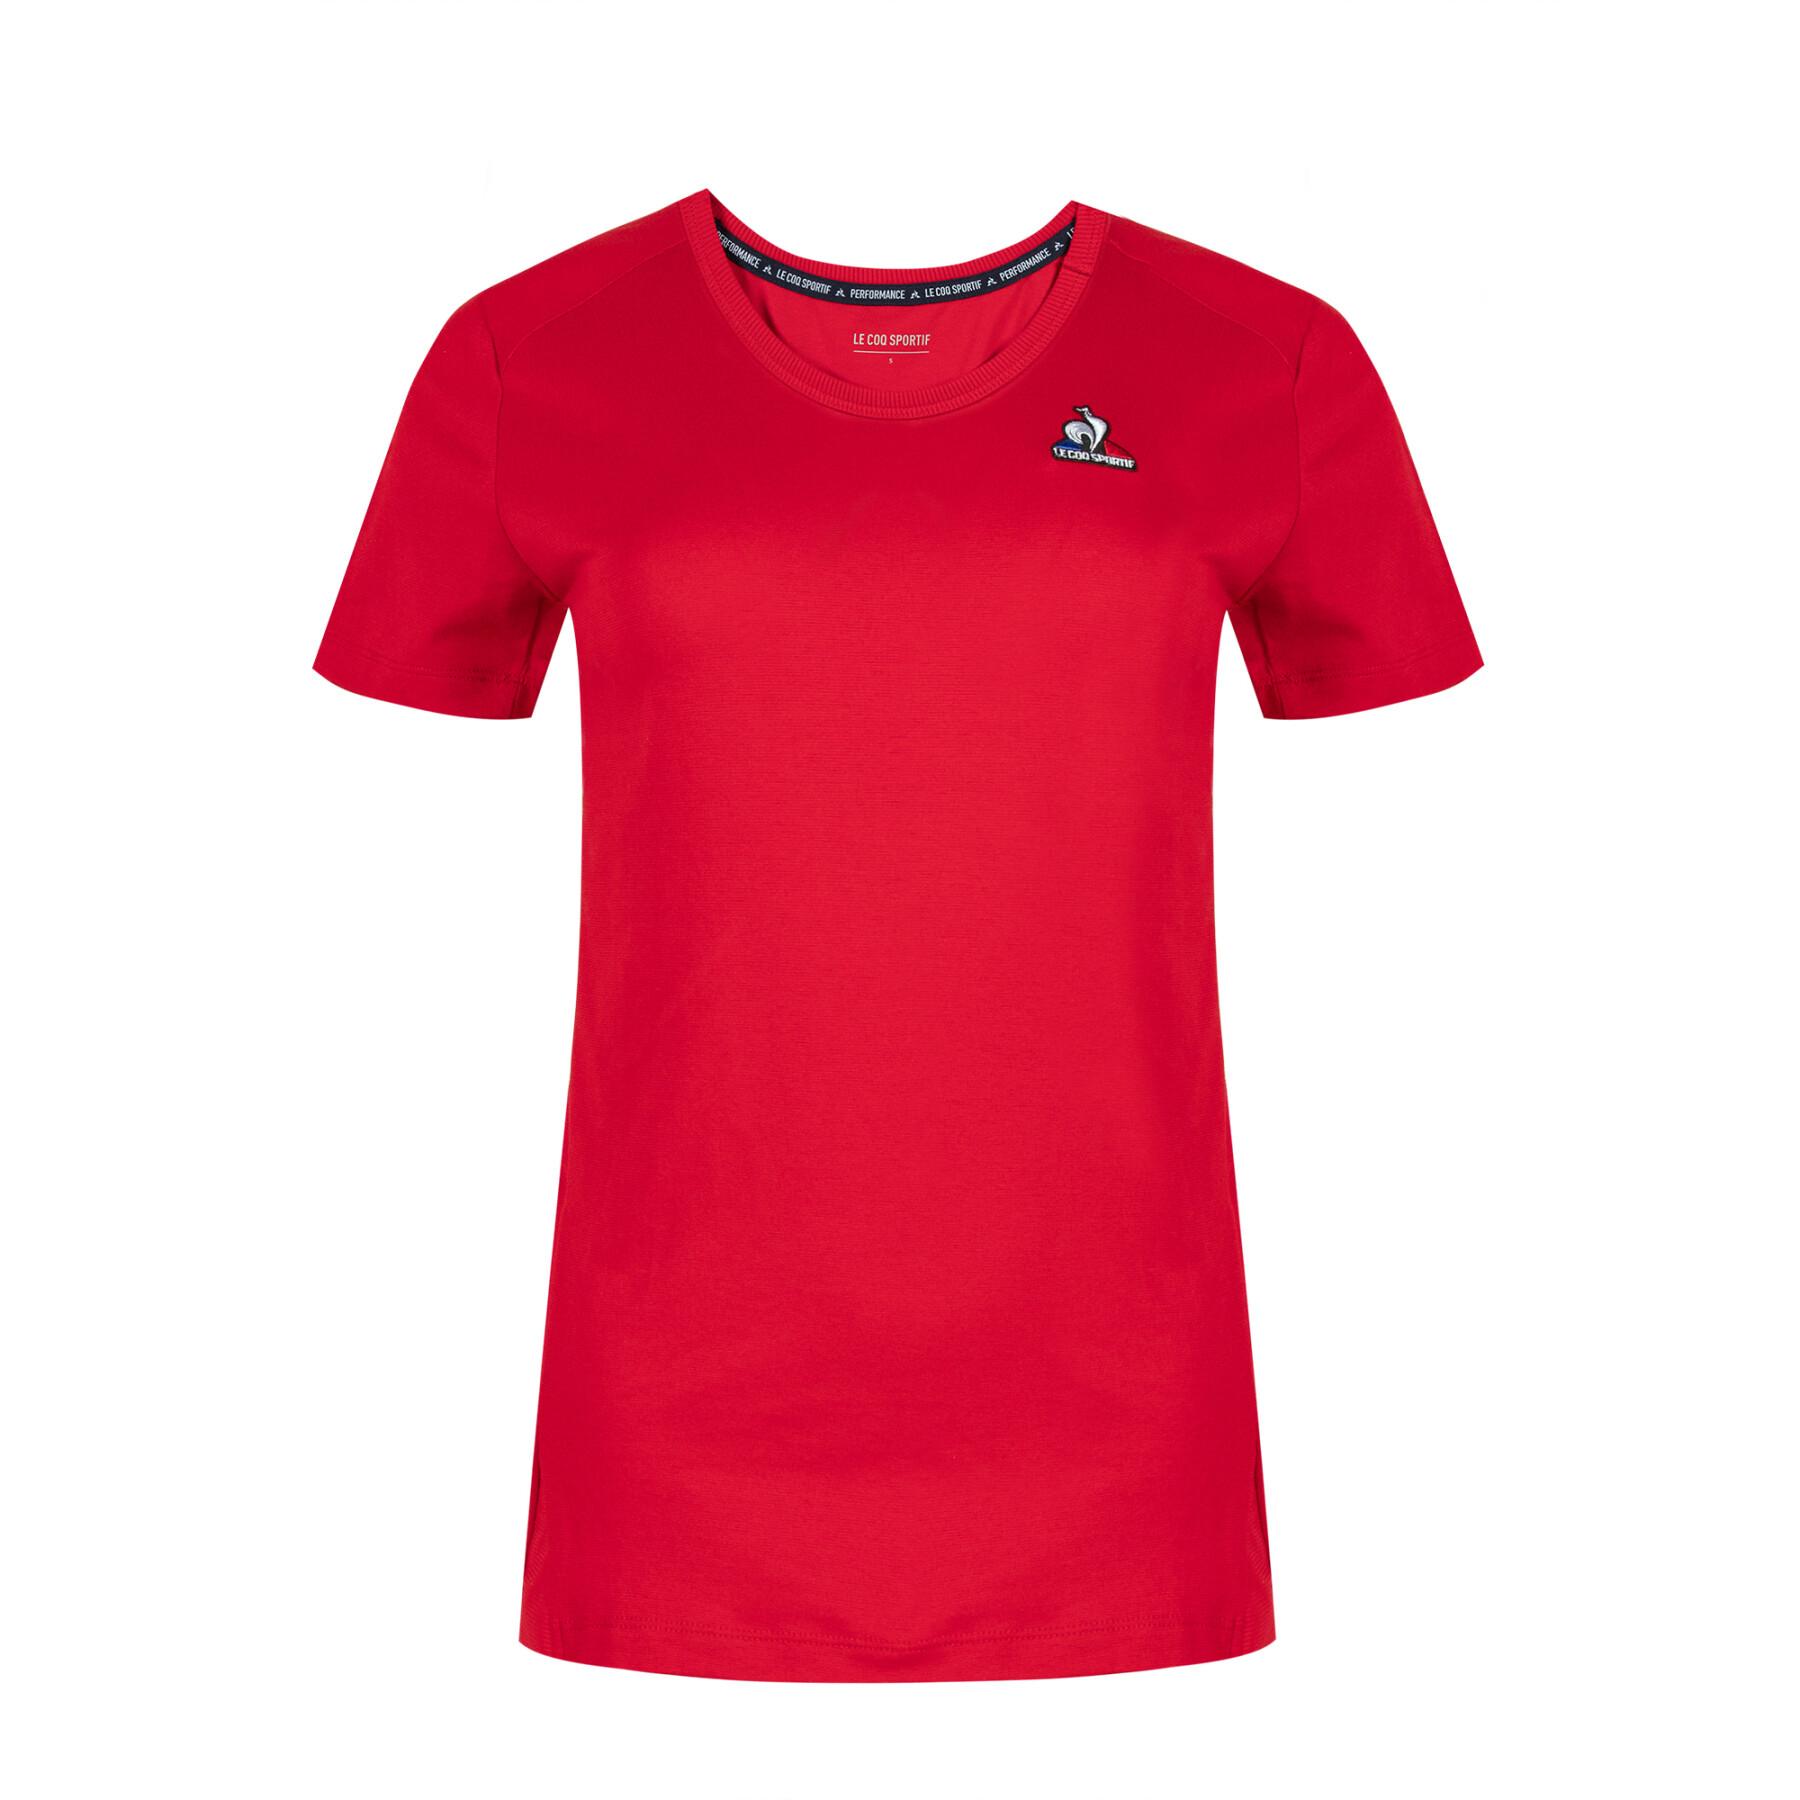 Frauen-T-Shirt Le Coq Sportif Traning